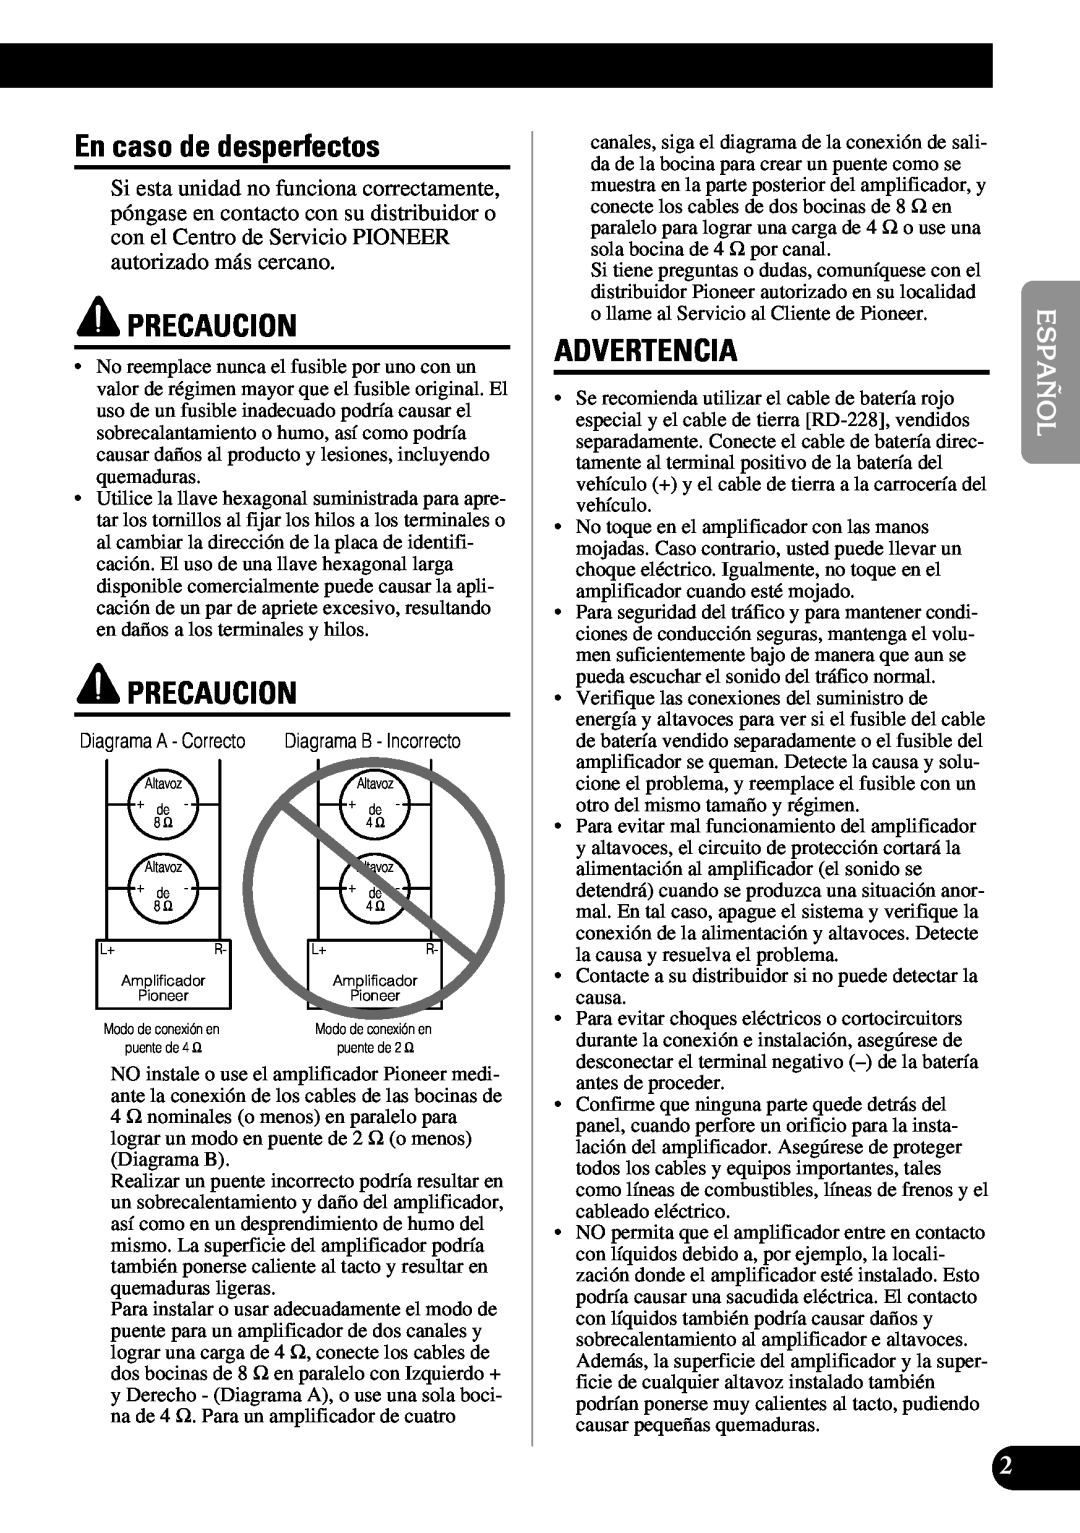 Pioneer PRS-A900 owner manual En caso de desperfectos, Precaucion, Advertencia 